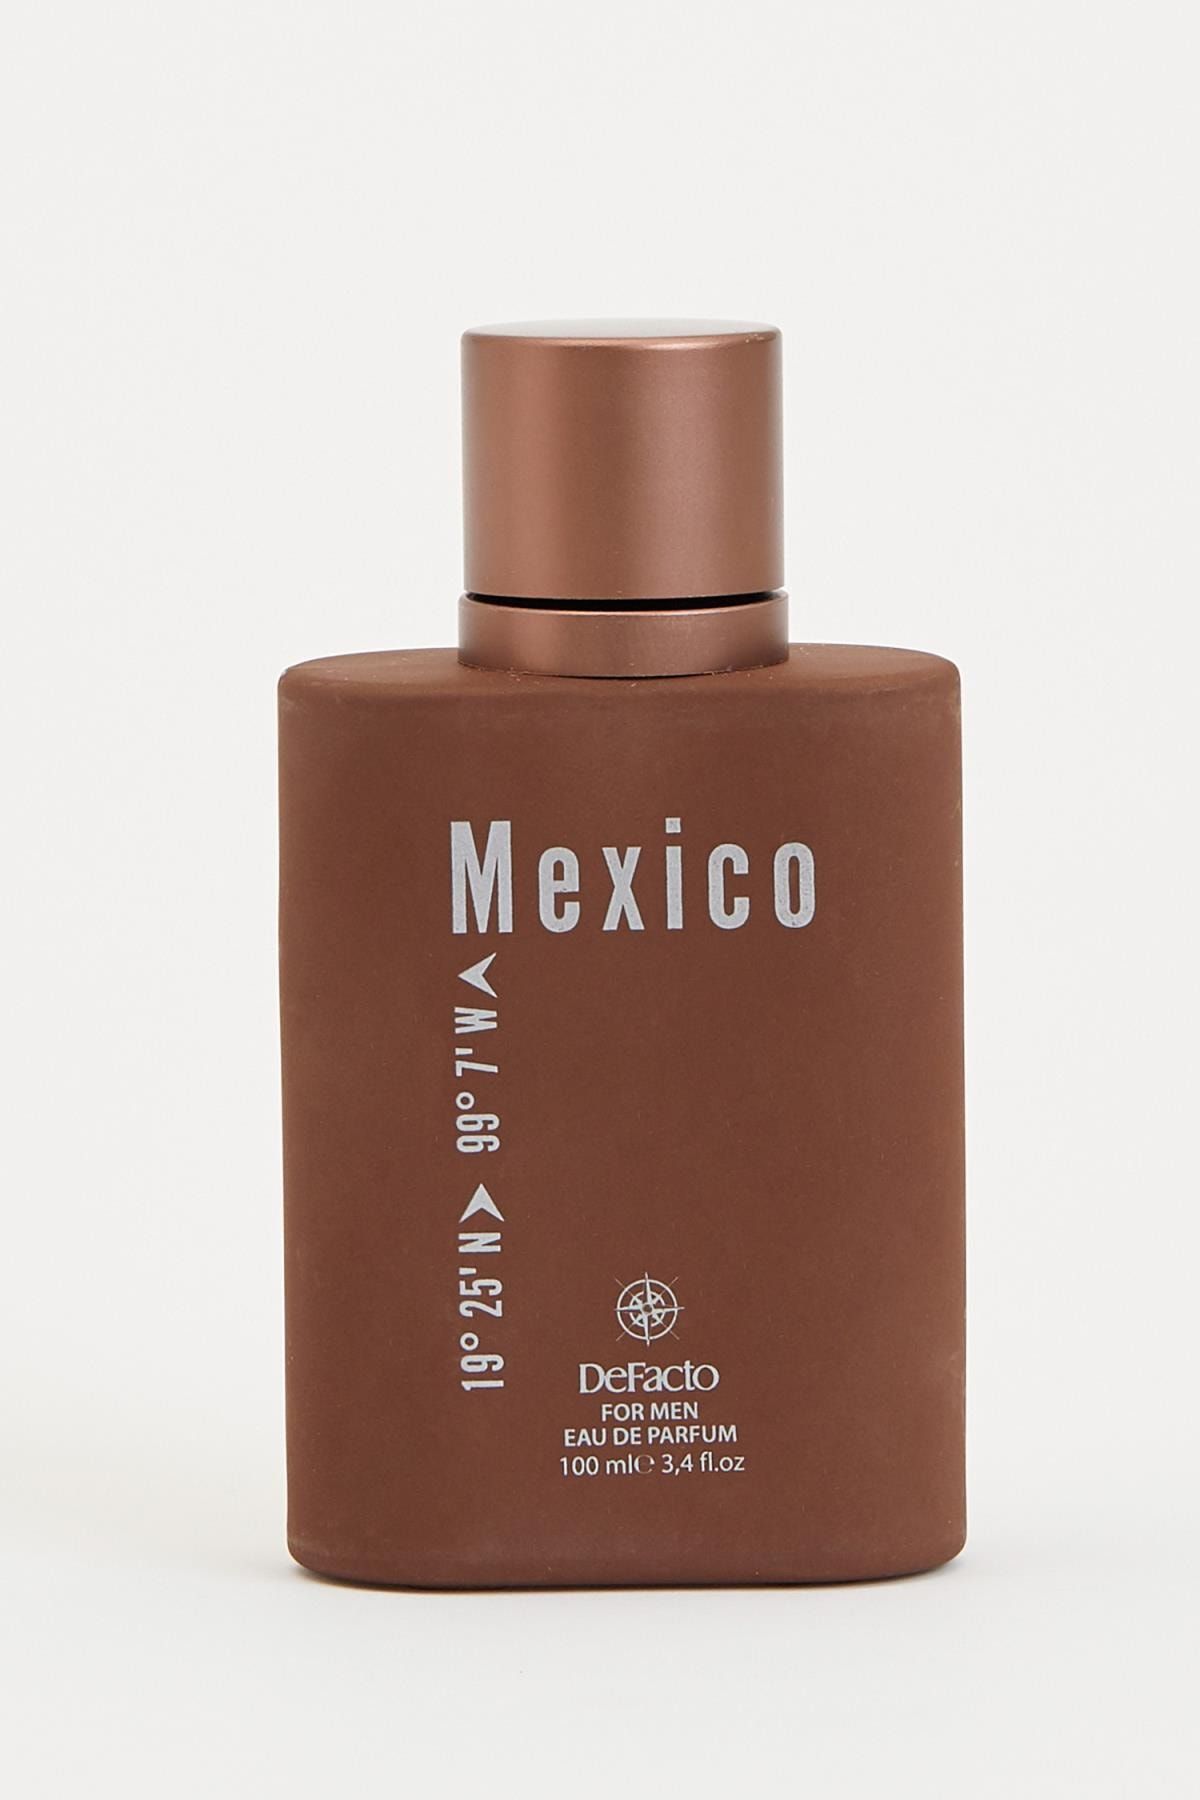 Defacto Erkek Parfüm Mexico 100 ml